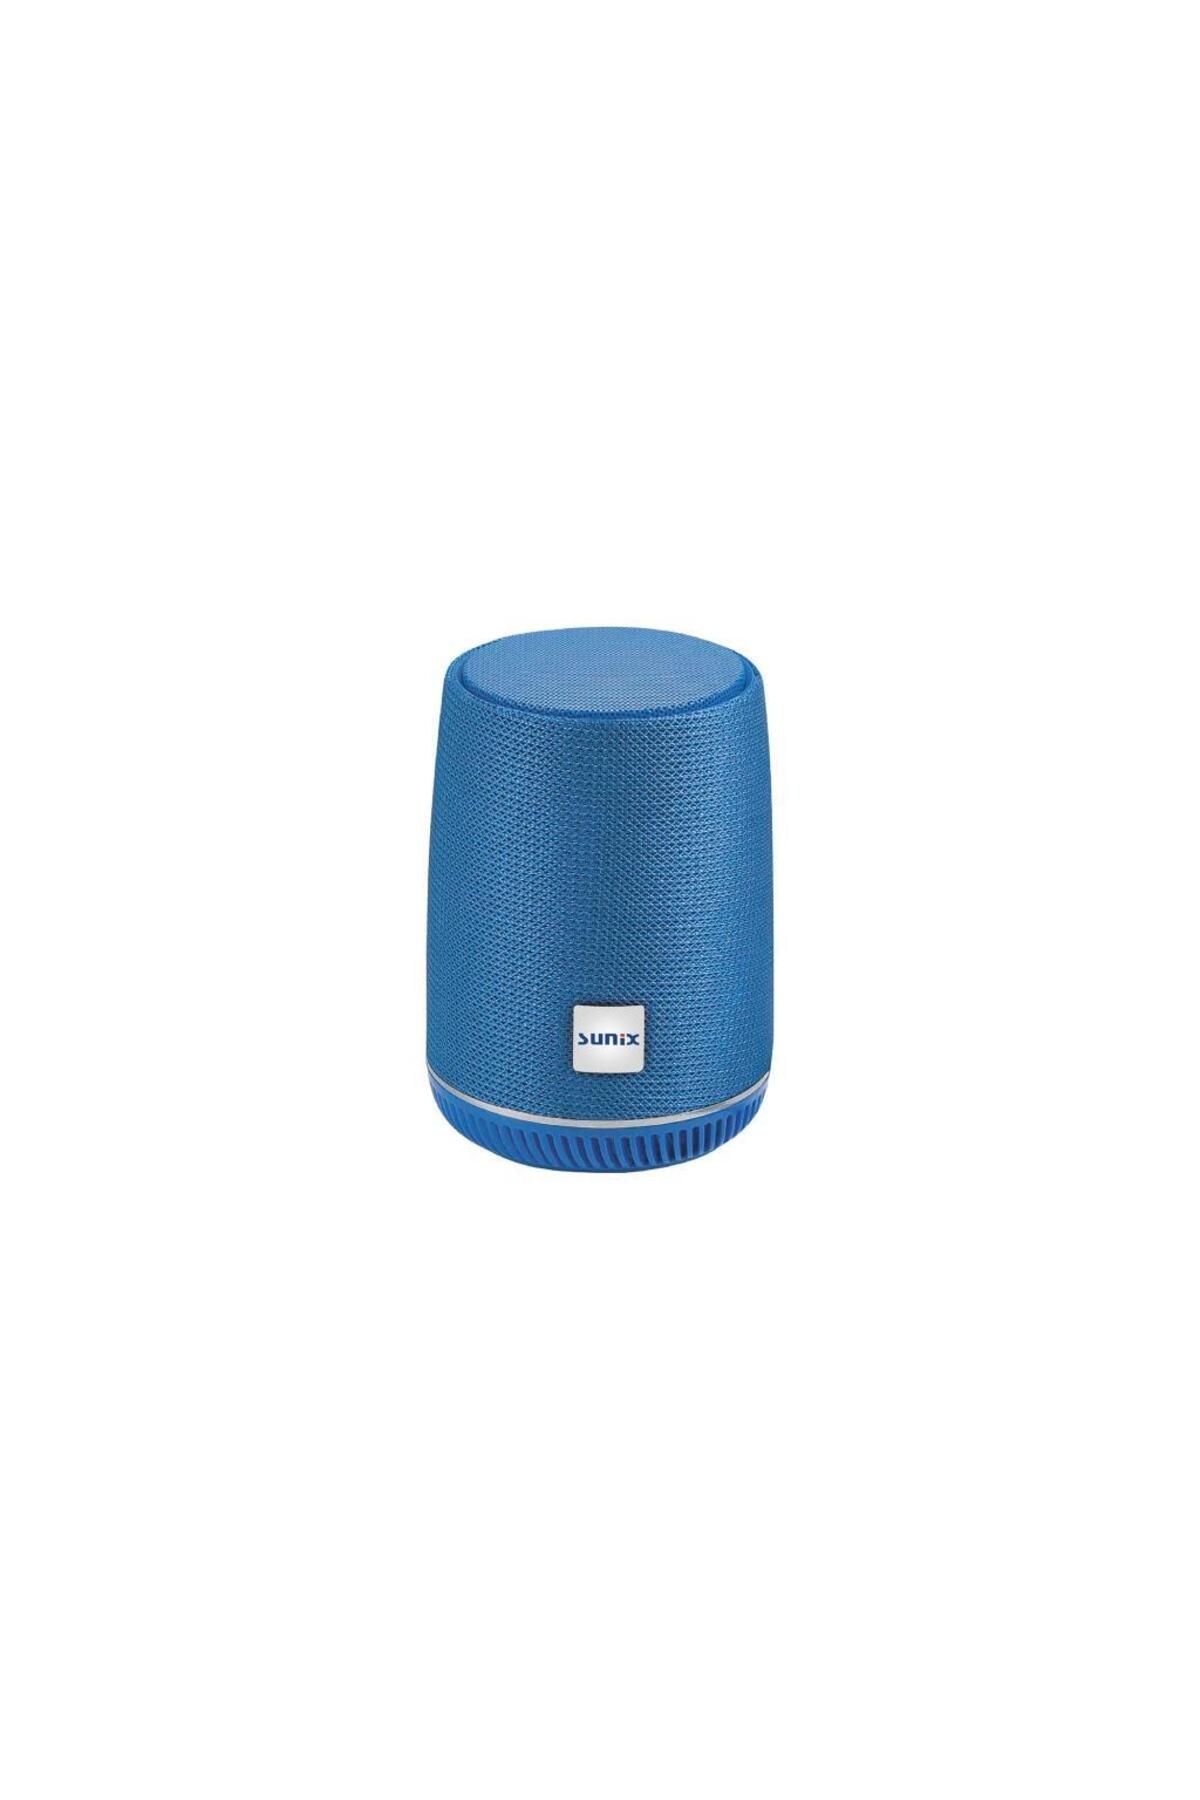 Sunix 5w Taşınabilir Bluetooth Hoparlör Mavi Bts-34